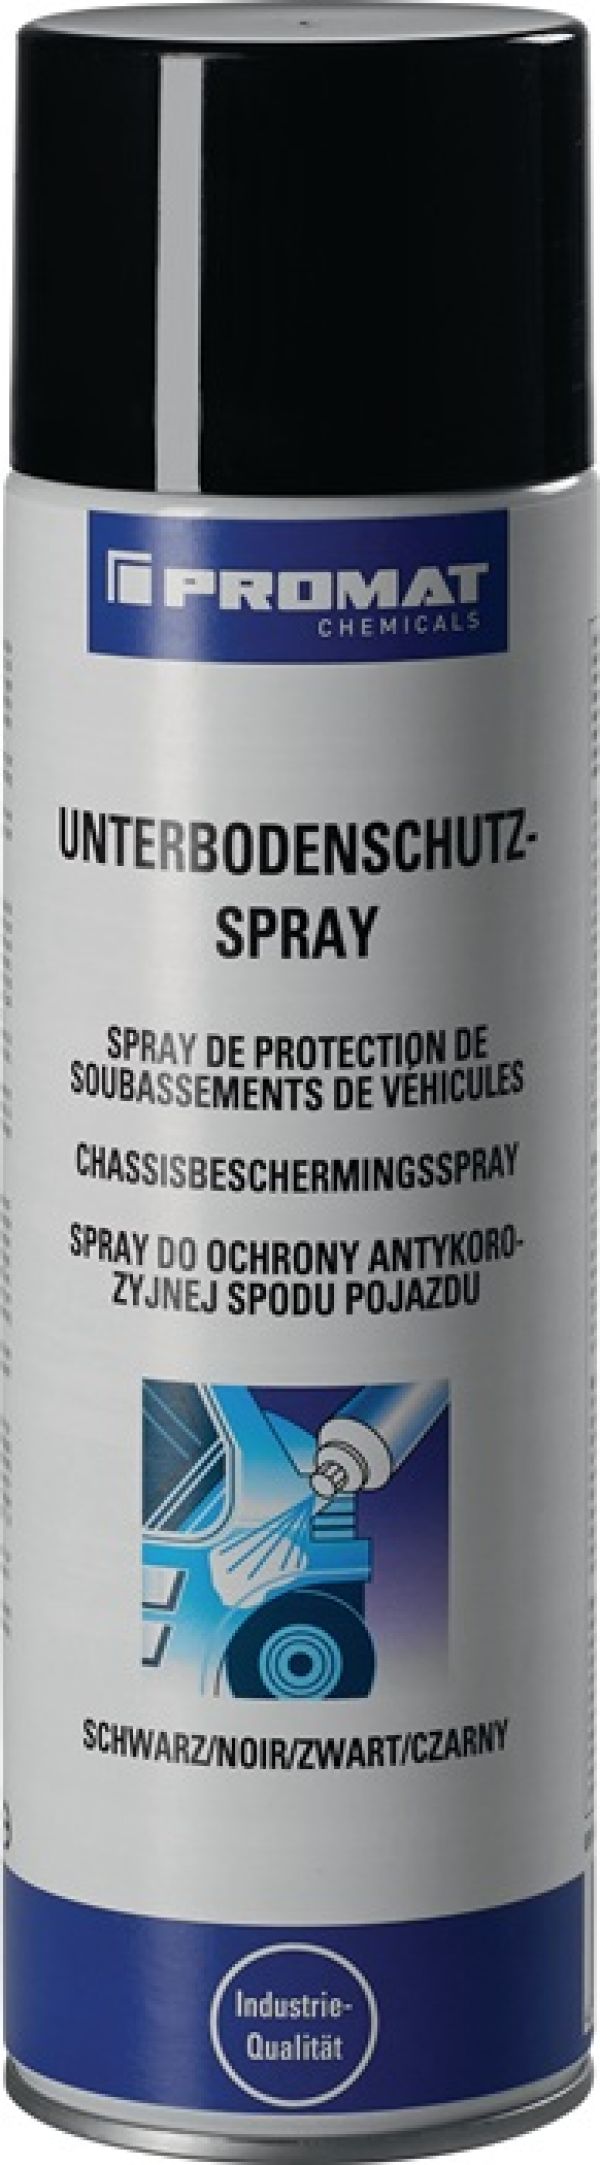 Unterbodenschutz-Spray schwarz 500 ml Spraydose PROMAT CHEMICALS